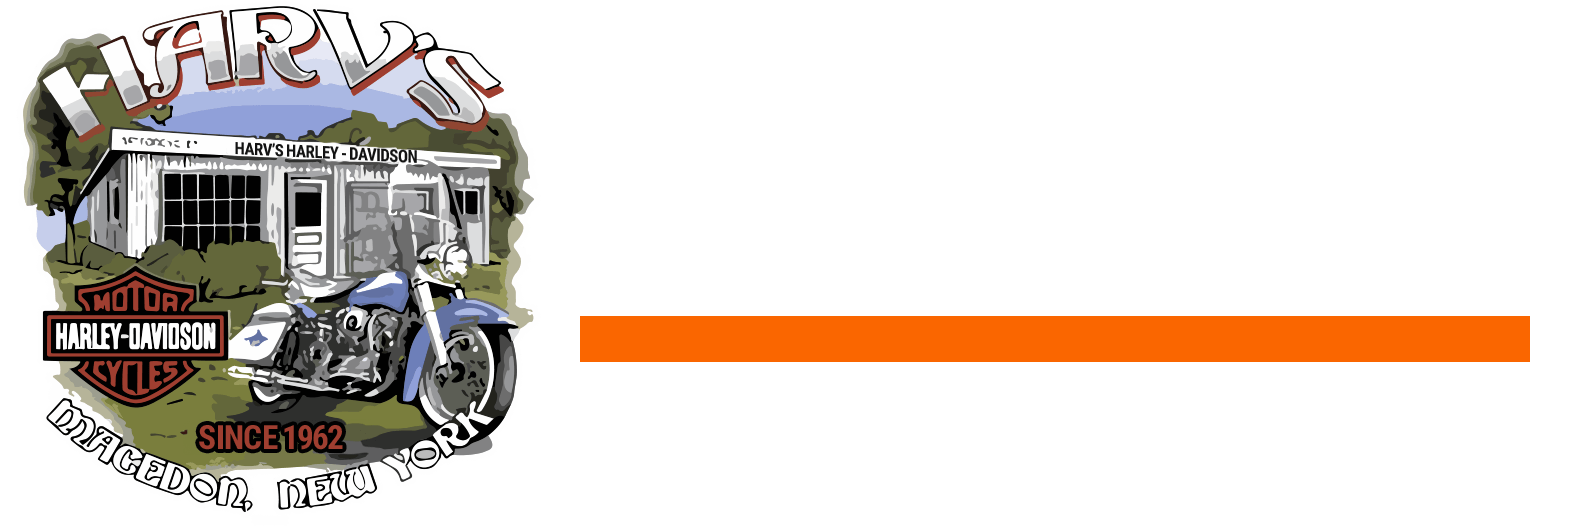 Harv's Harley-Davidson